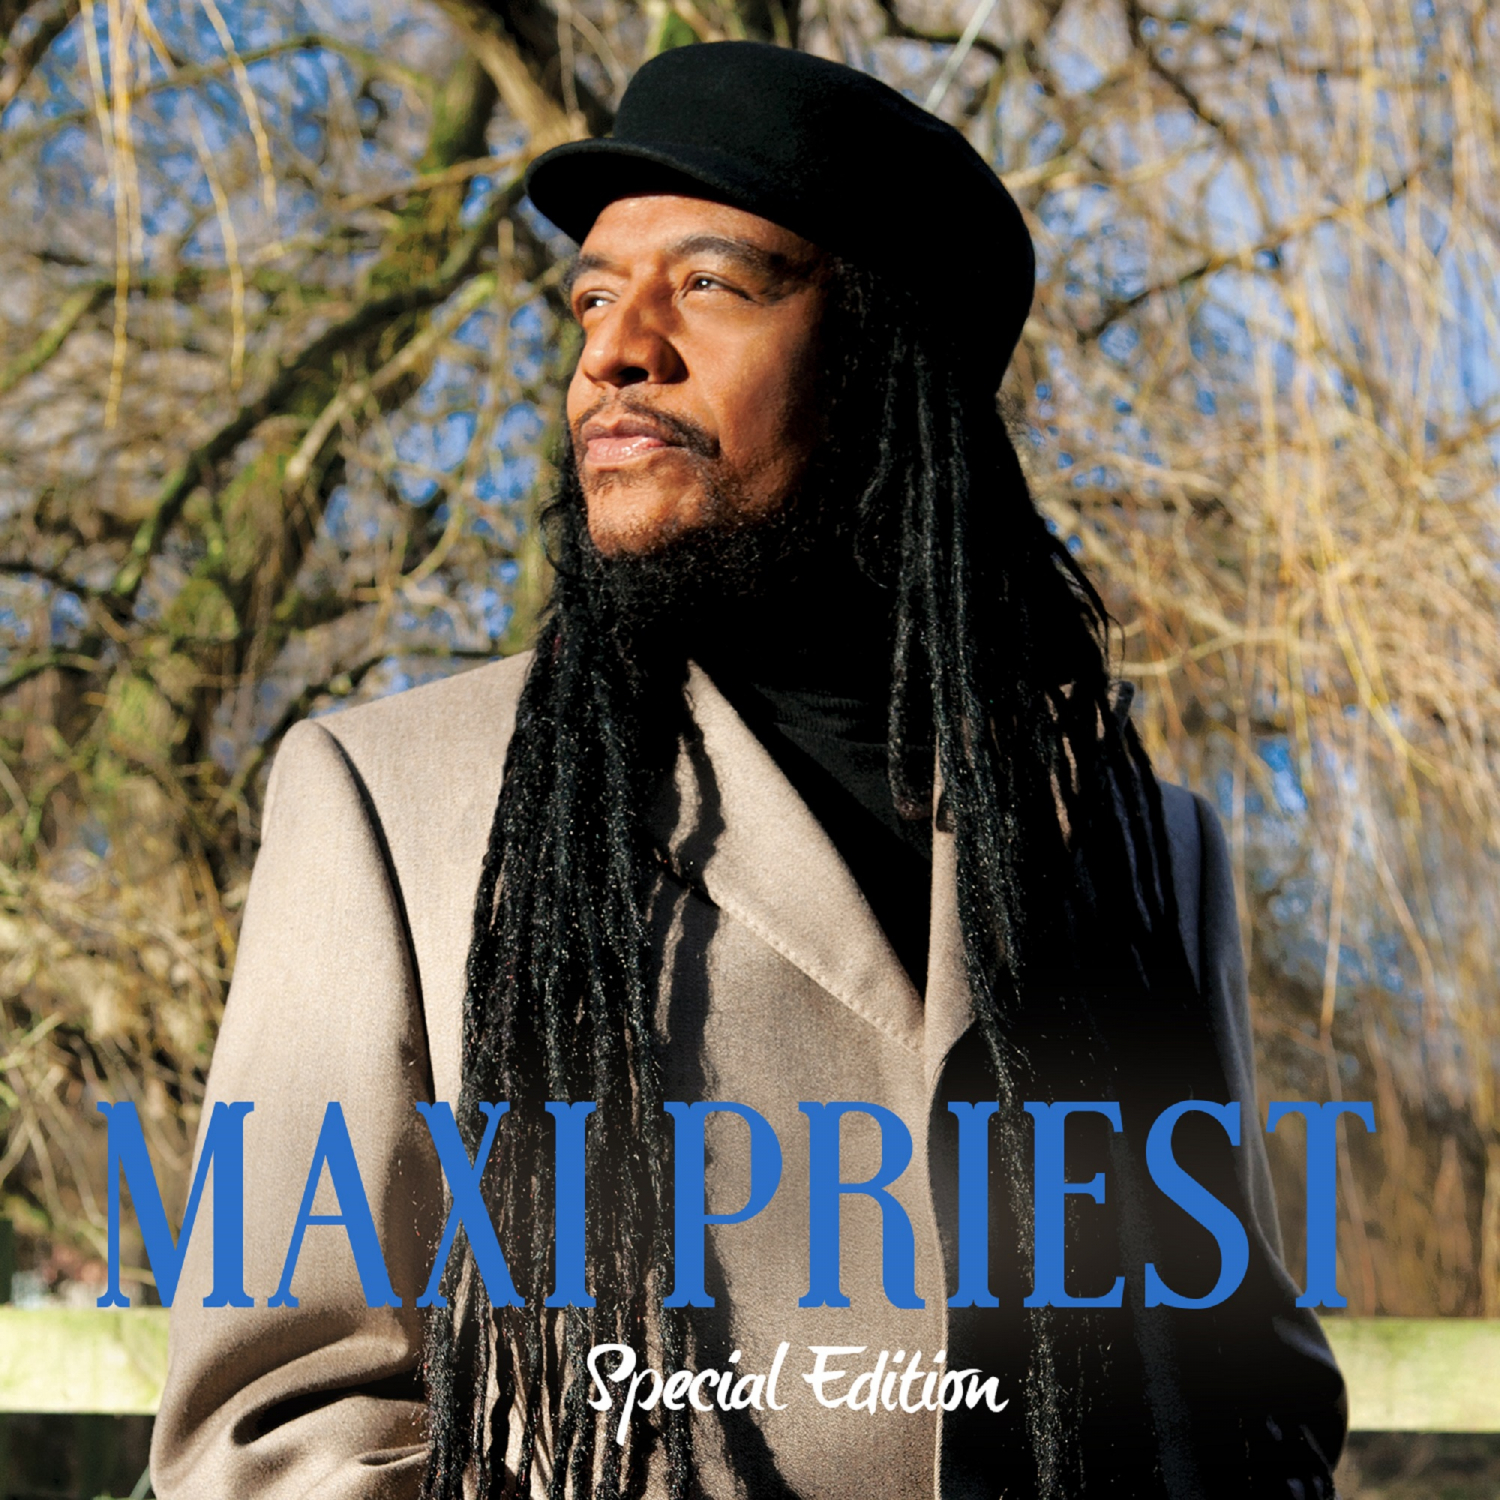 Maxi priest. Maxi Priest Exclusive.